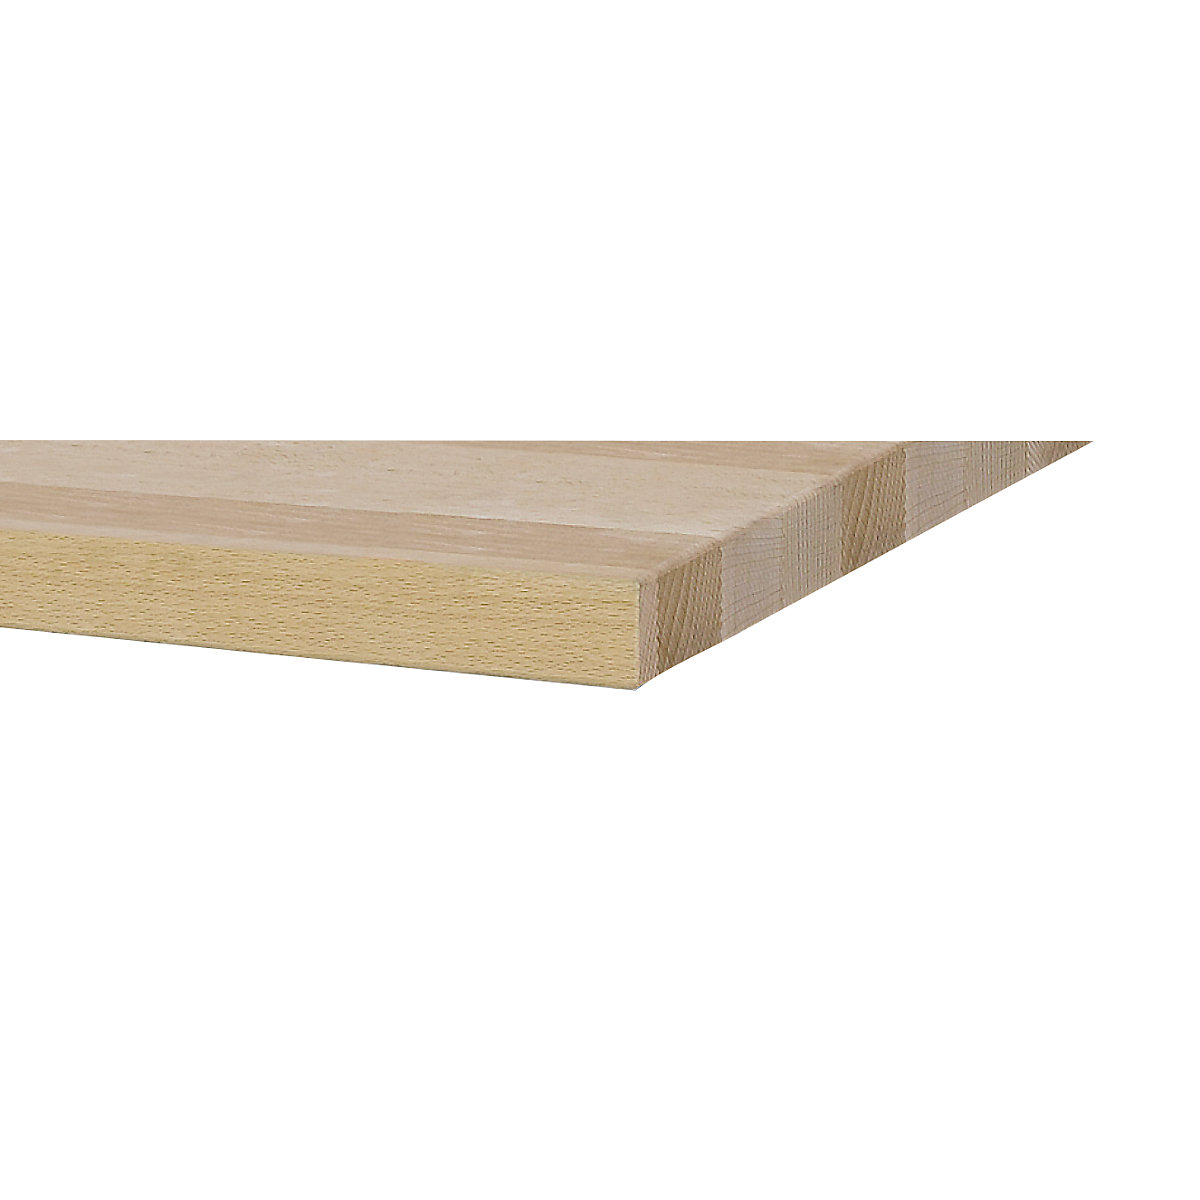 Stół warsztatowy, szerokość 2800 mm, konstrukcja ramowa – ANKE (Zdjęcie produktu 3)-2